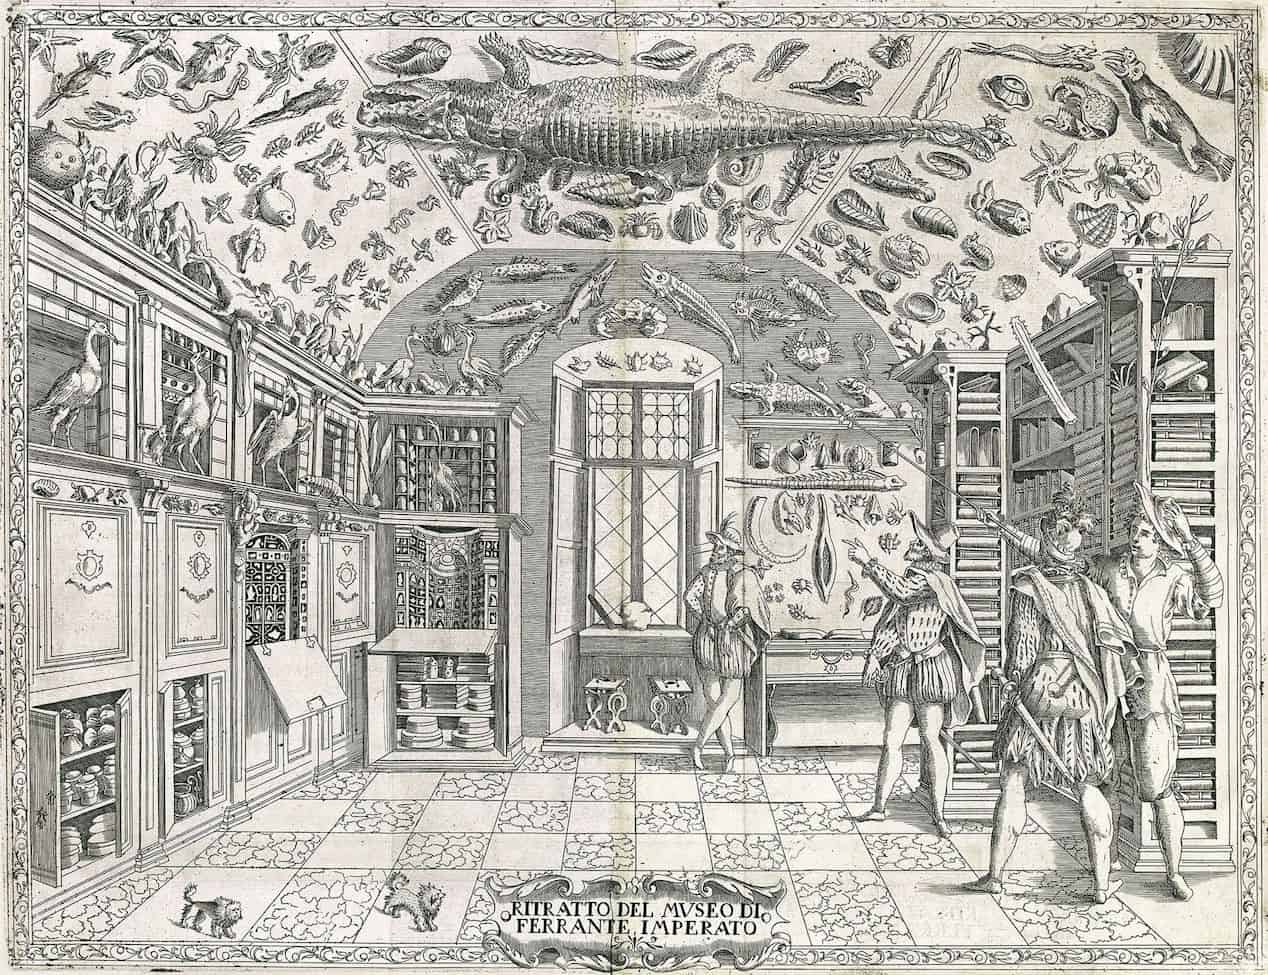 Ferrante Imperato, Dell'Historia Naturale (1599), the earliest illustration of a natural history cabinet